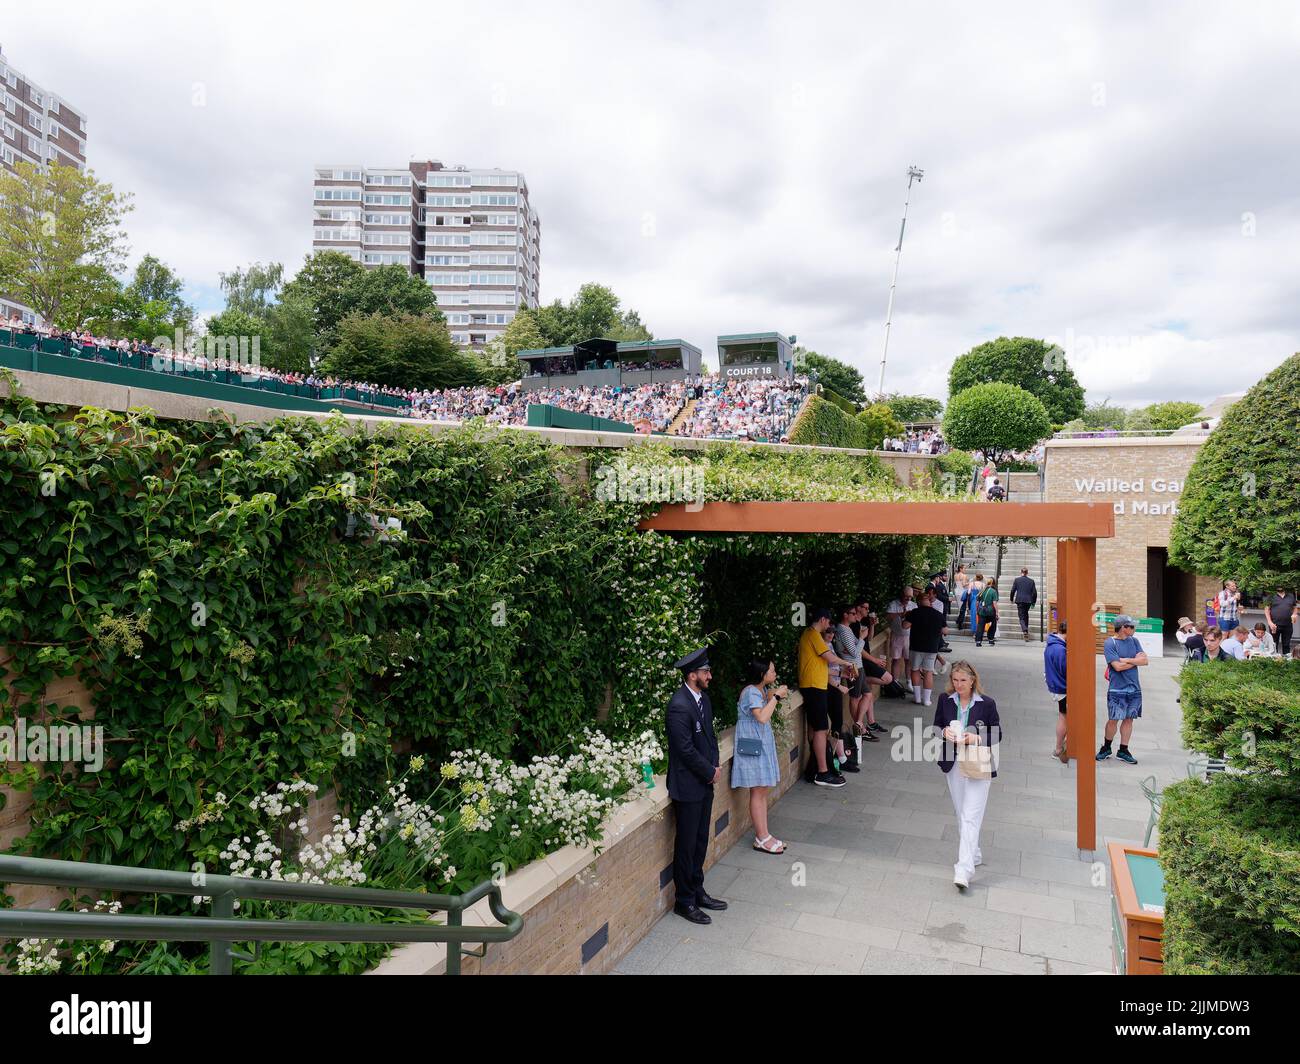 Wimbledon, Greater London, Inghilterra, 02 2022 luglio: Wimbledon Tennis Championship. Cortile esterno pieno di spettatori e un vicino blocco di appartamenti. Foto Stock